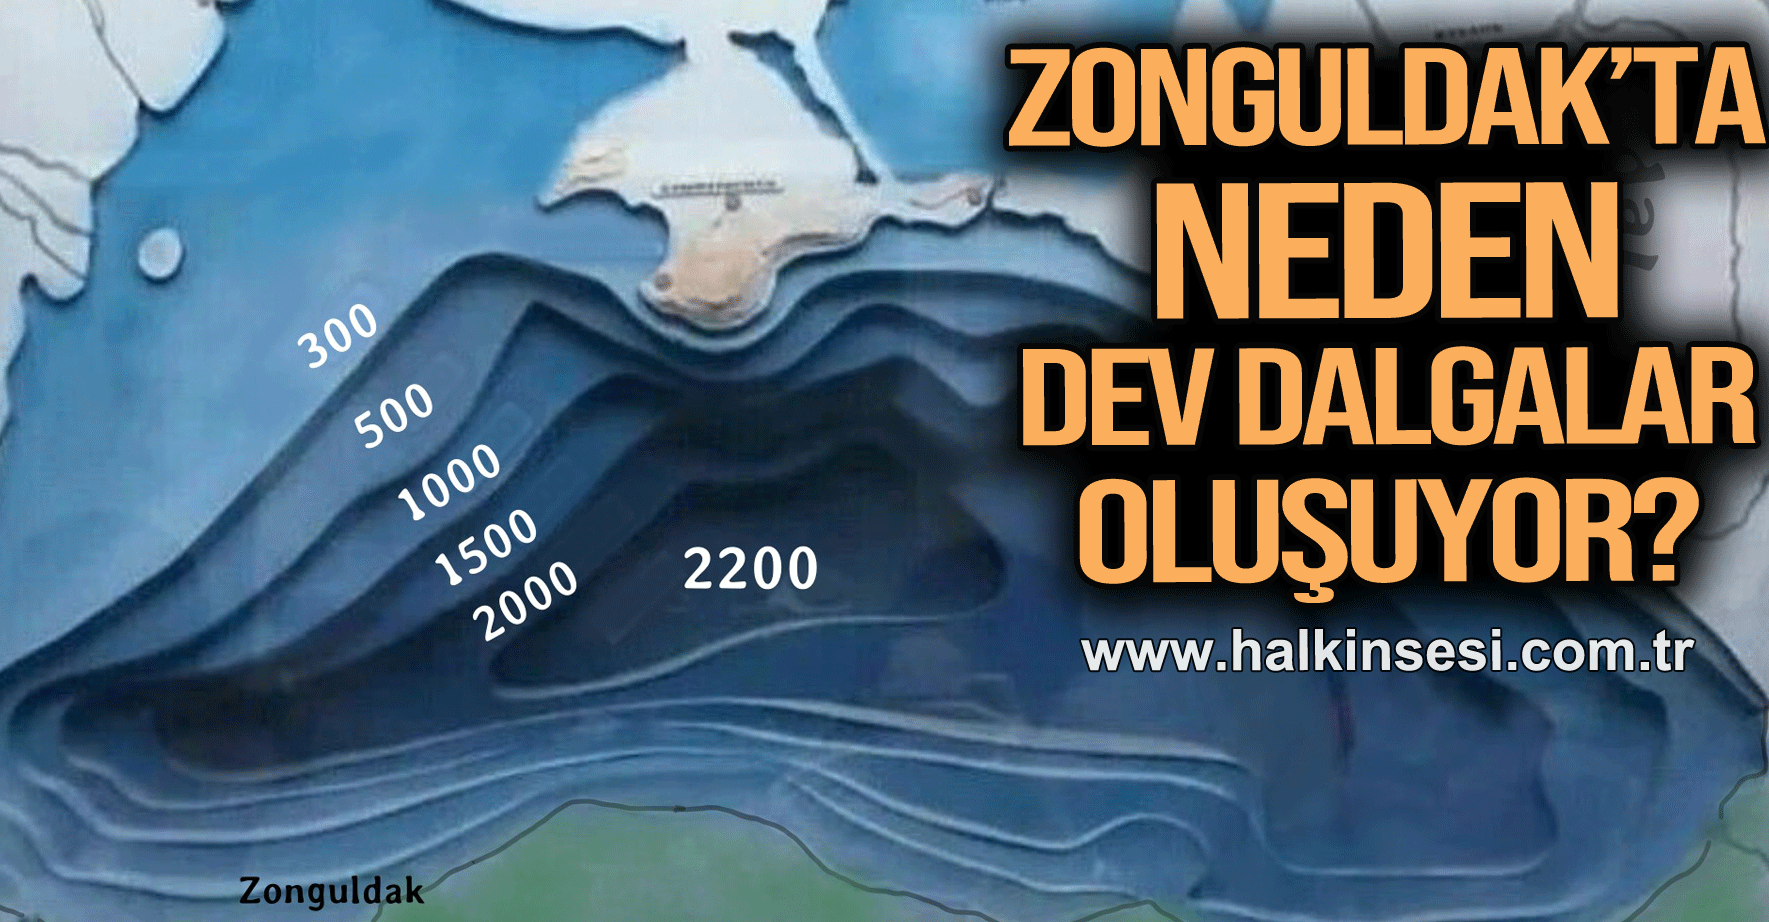 Zonguldak’ta neden dev dalgalar oluşuyor?